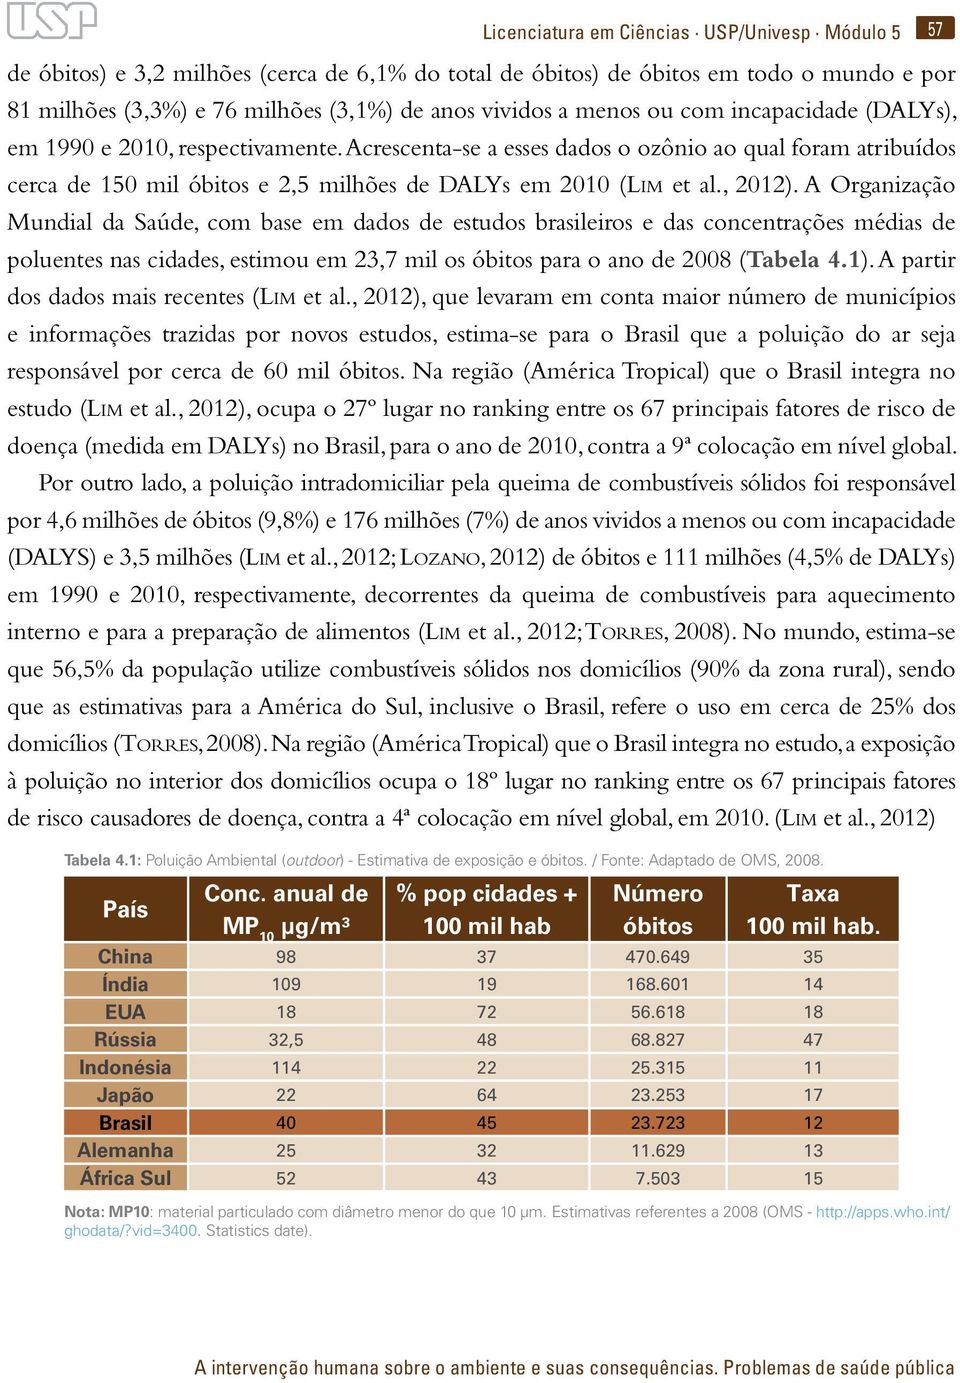 , 2012). A Organização Mundial da Saúde, com base em dados de estudos brasileiros e das concentrações médias de poluentes nas cidades, estimou em 23,7 mil os óbitos para o ano de 2008 (Tabela 4.1).